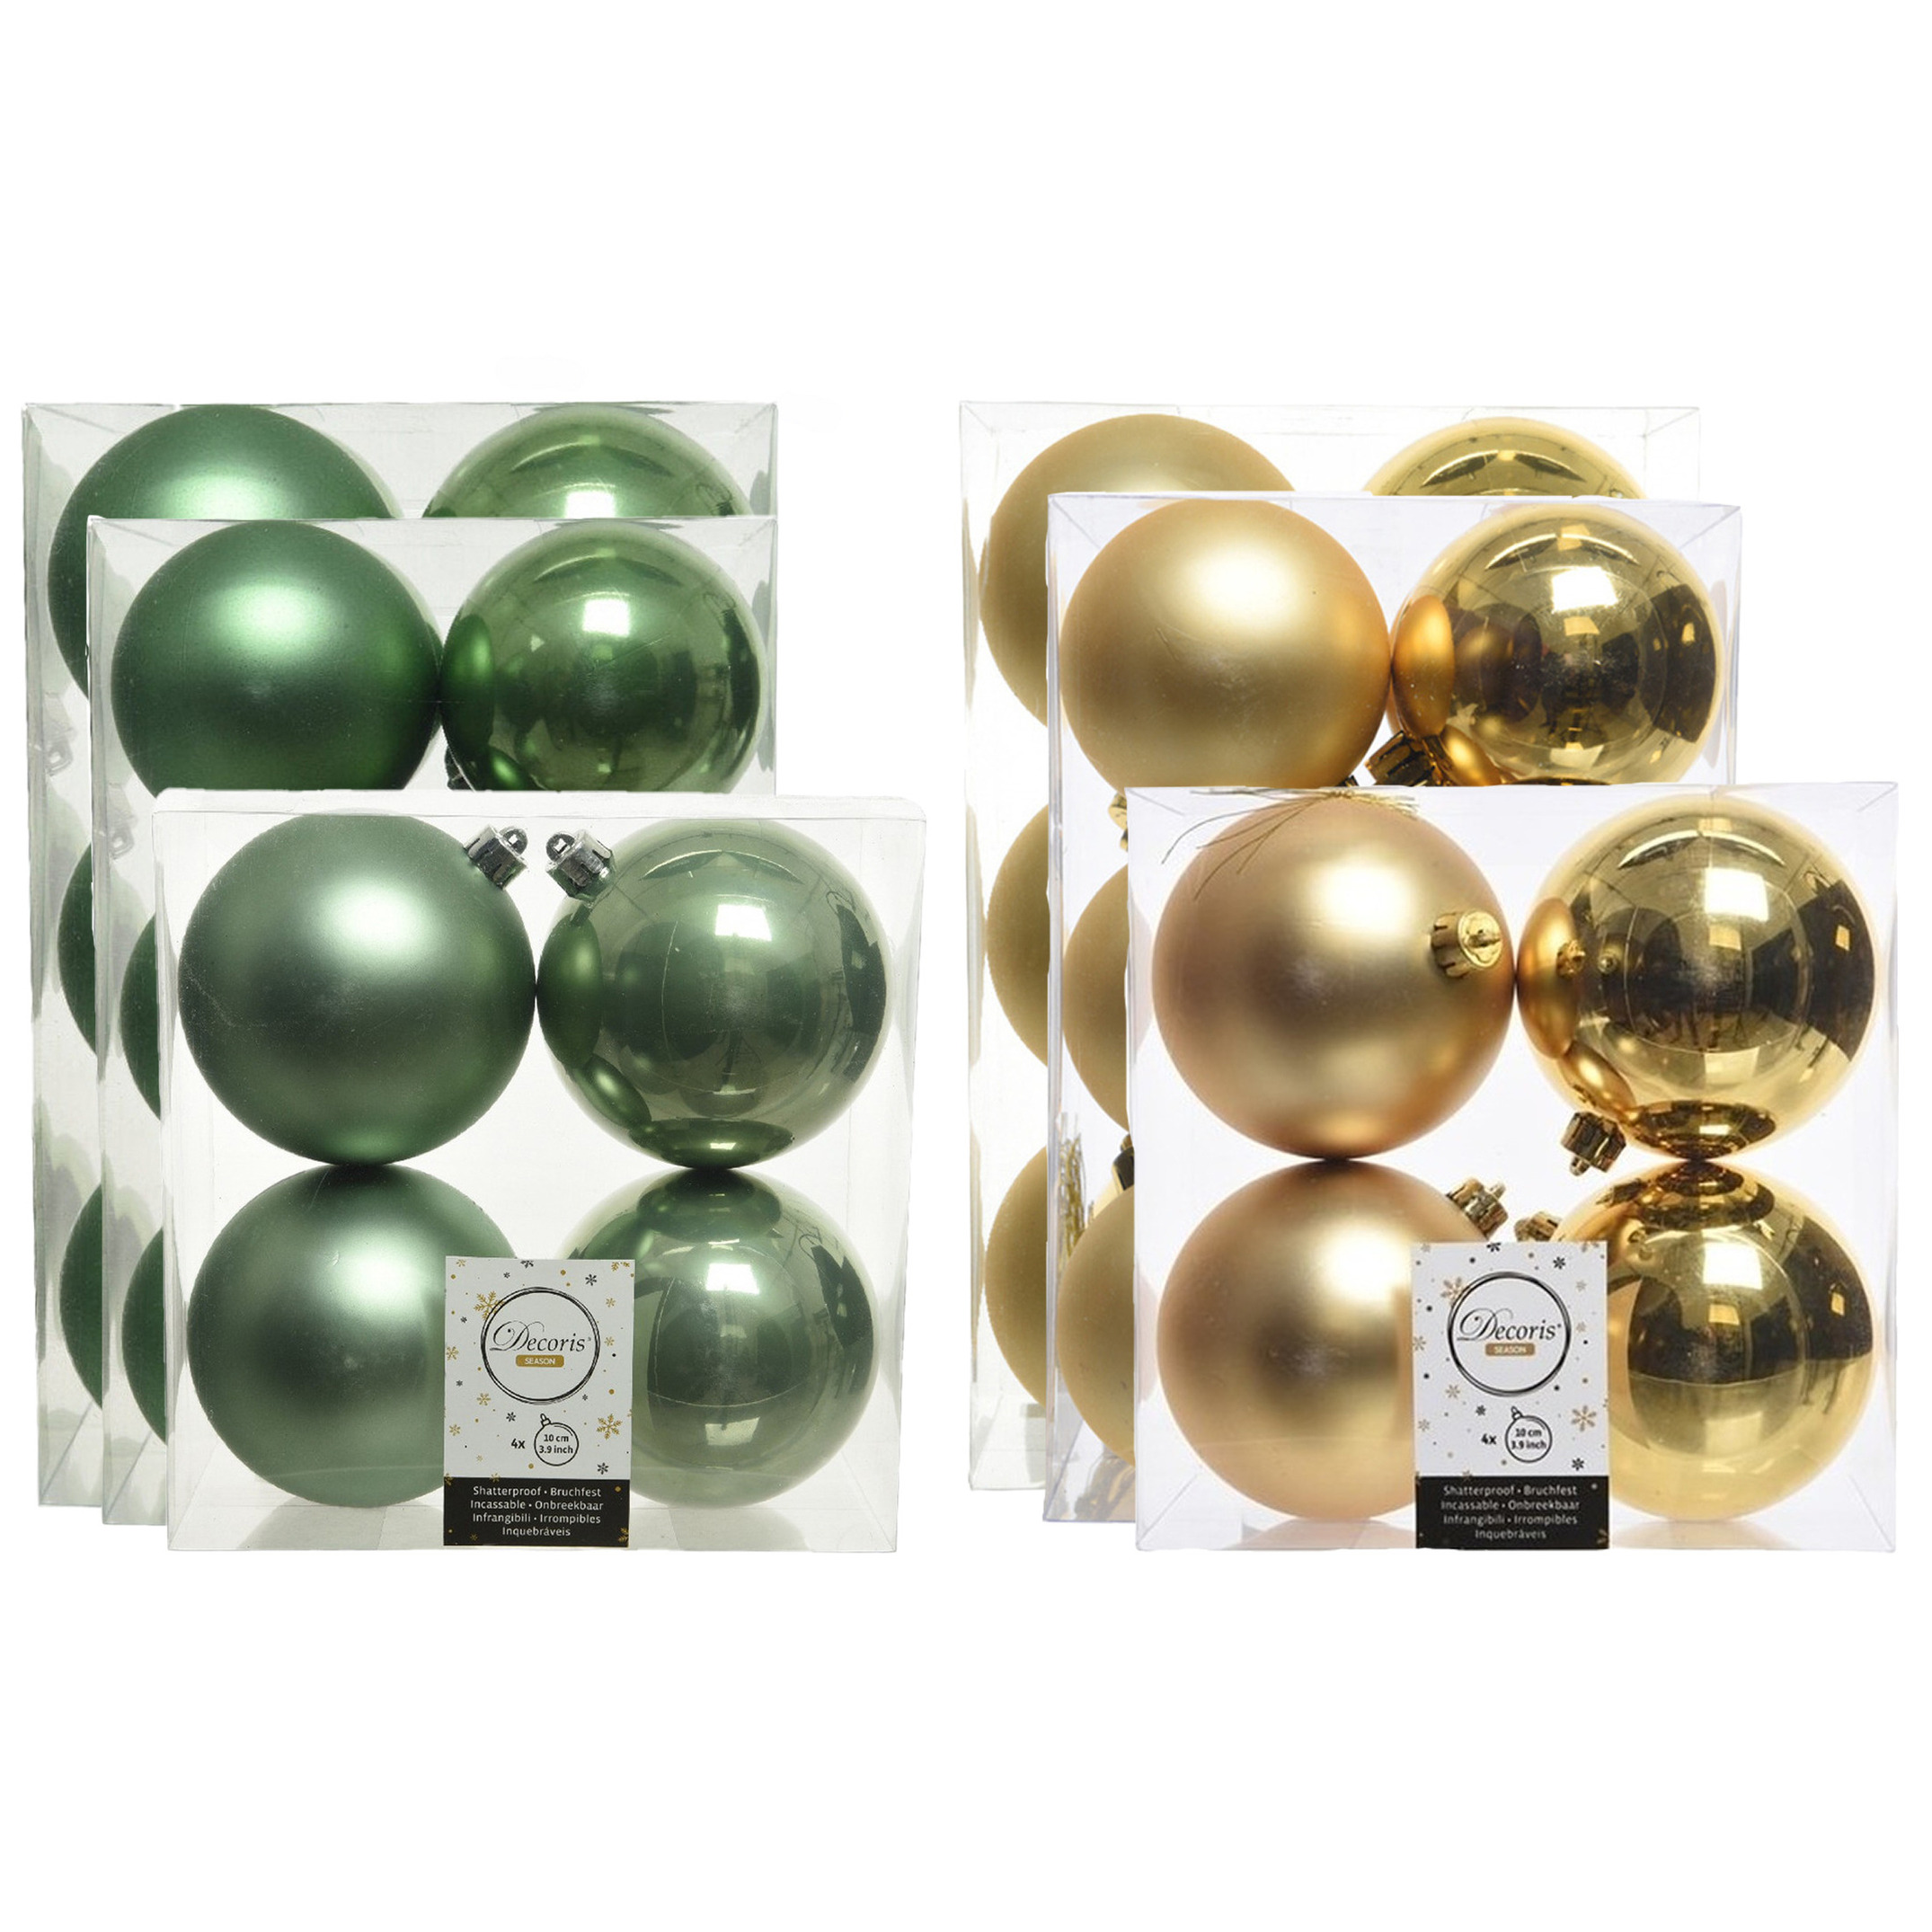 Kerstversiering kunststof kerstballen mix salie groen-goud 6-8-10 cm pakket van 44x stuks